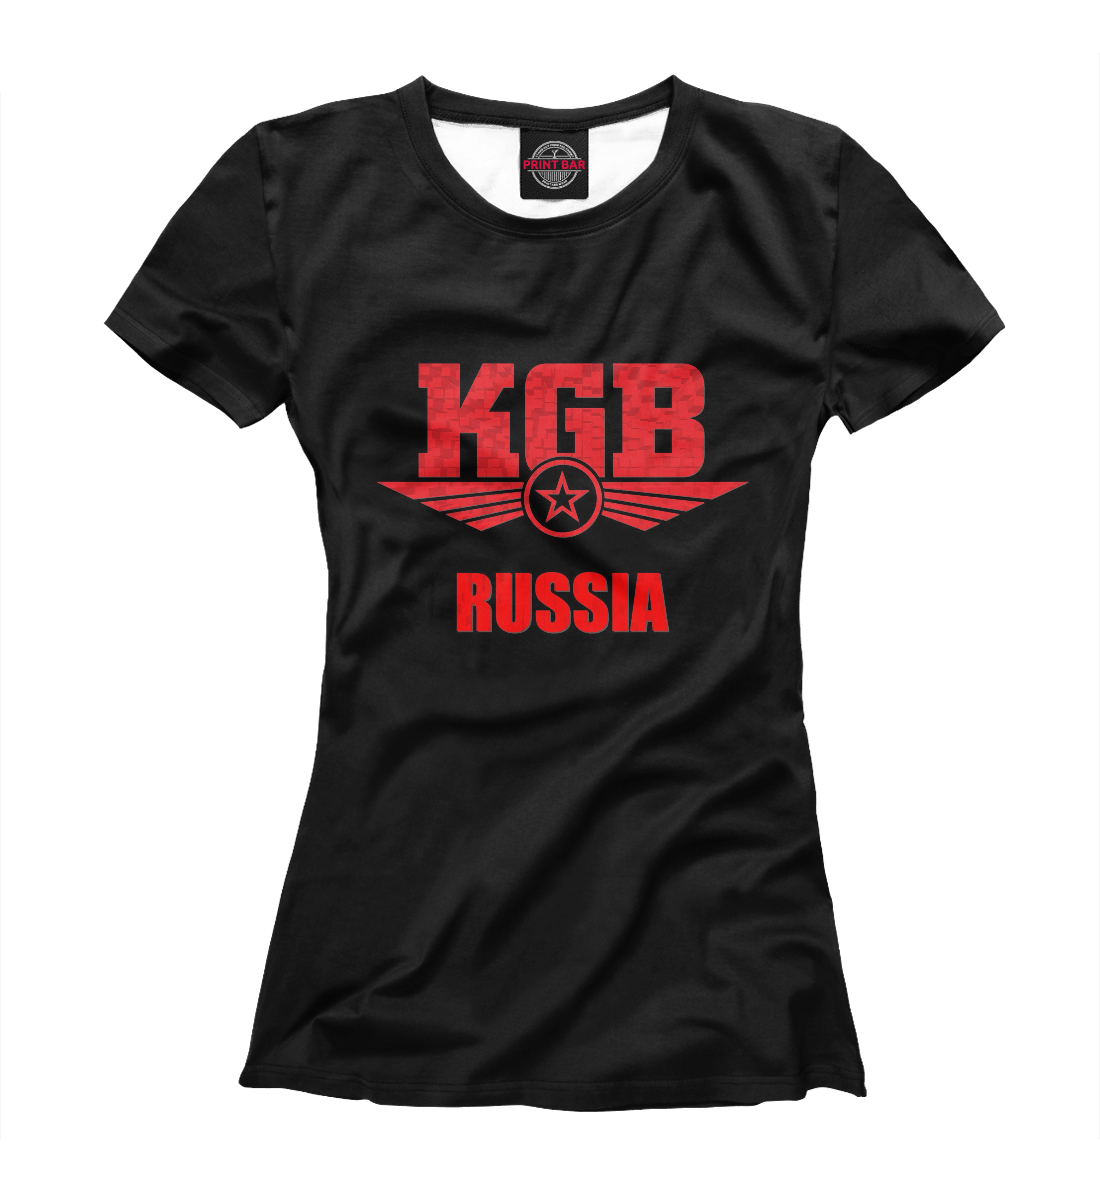 Футболка КГБ для женщин, артикул: PGR-376106-fut-1mp